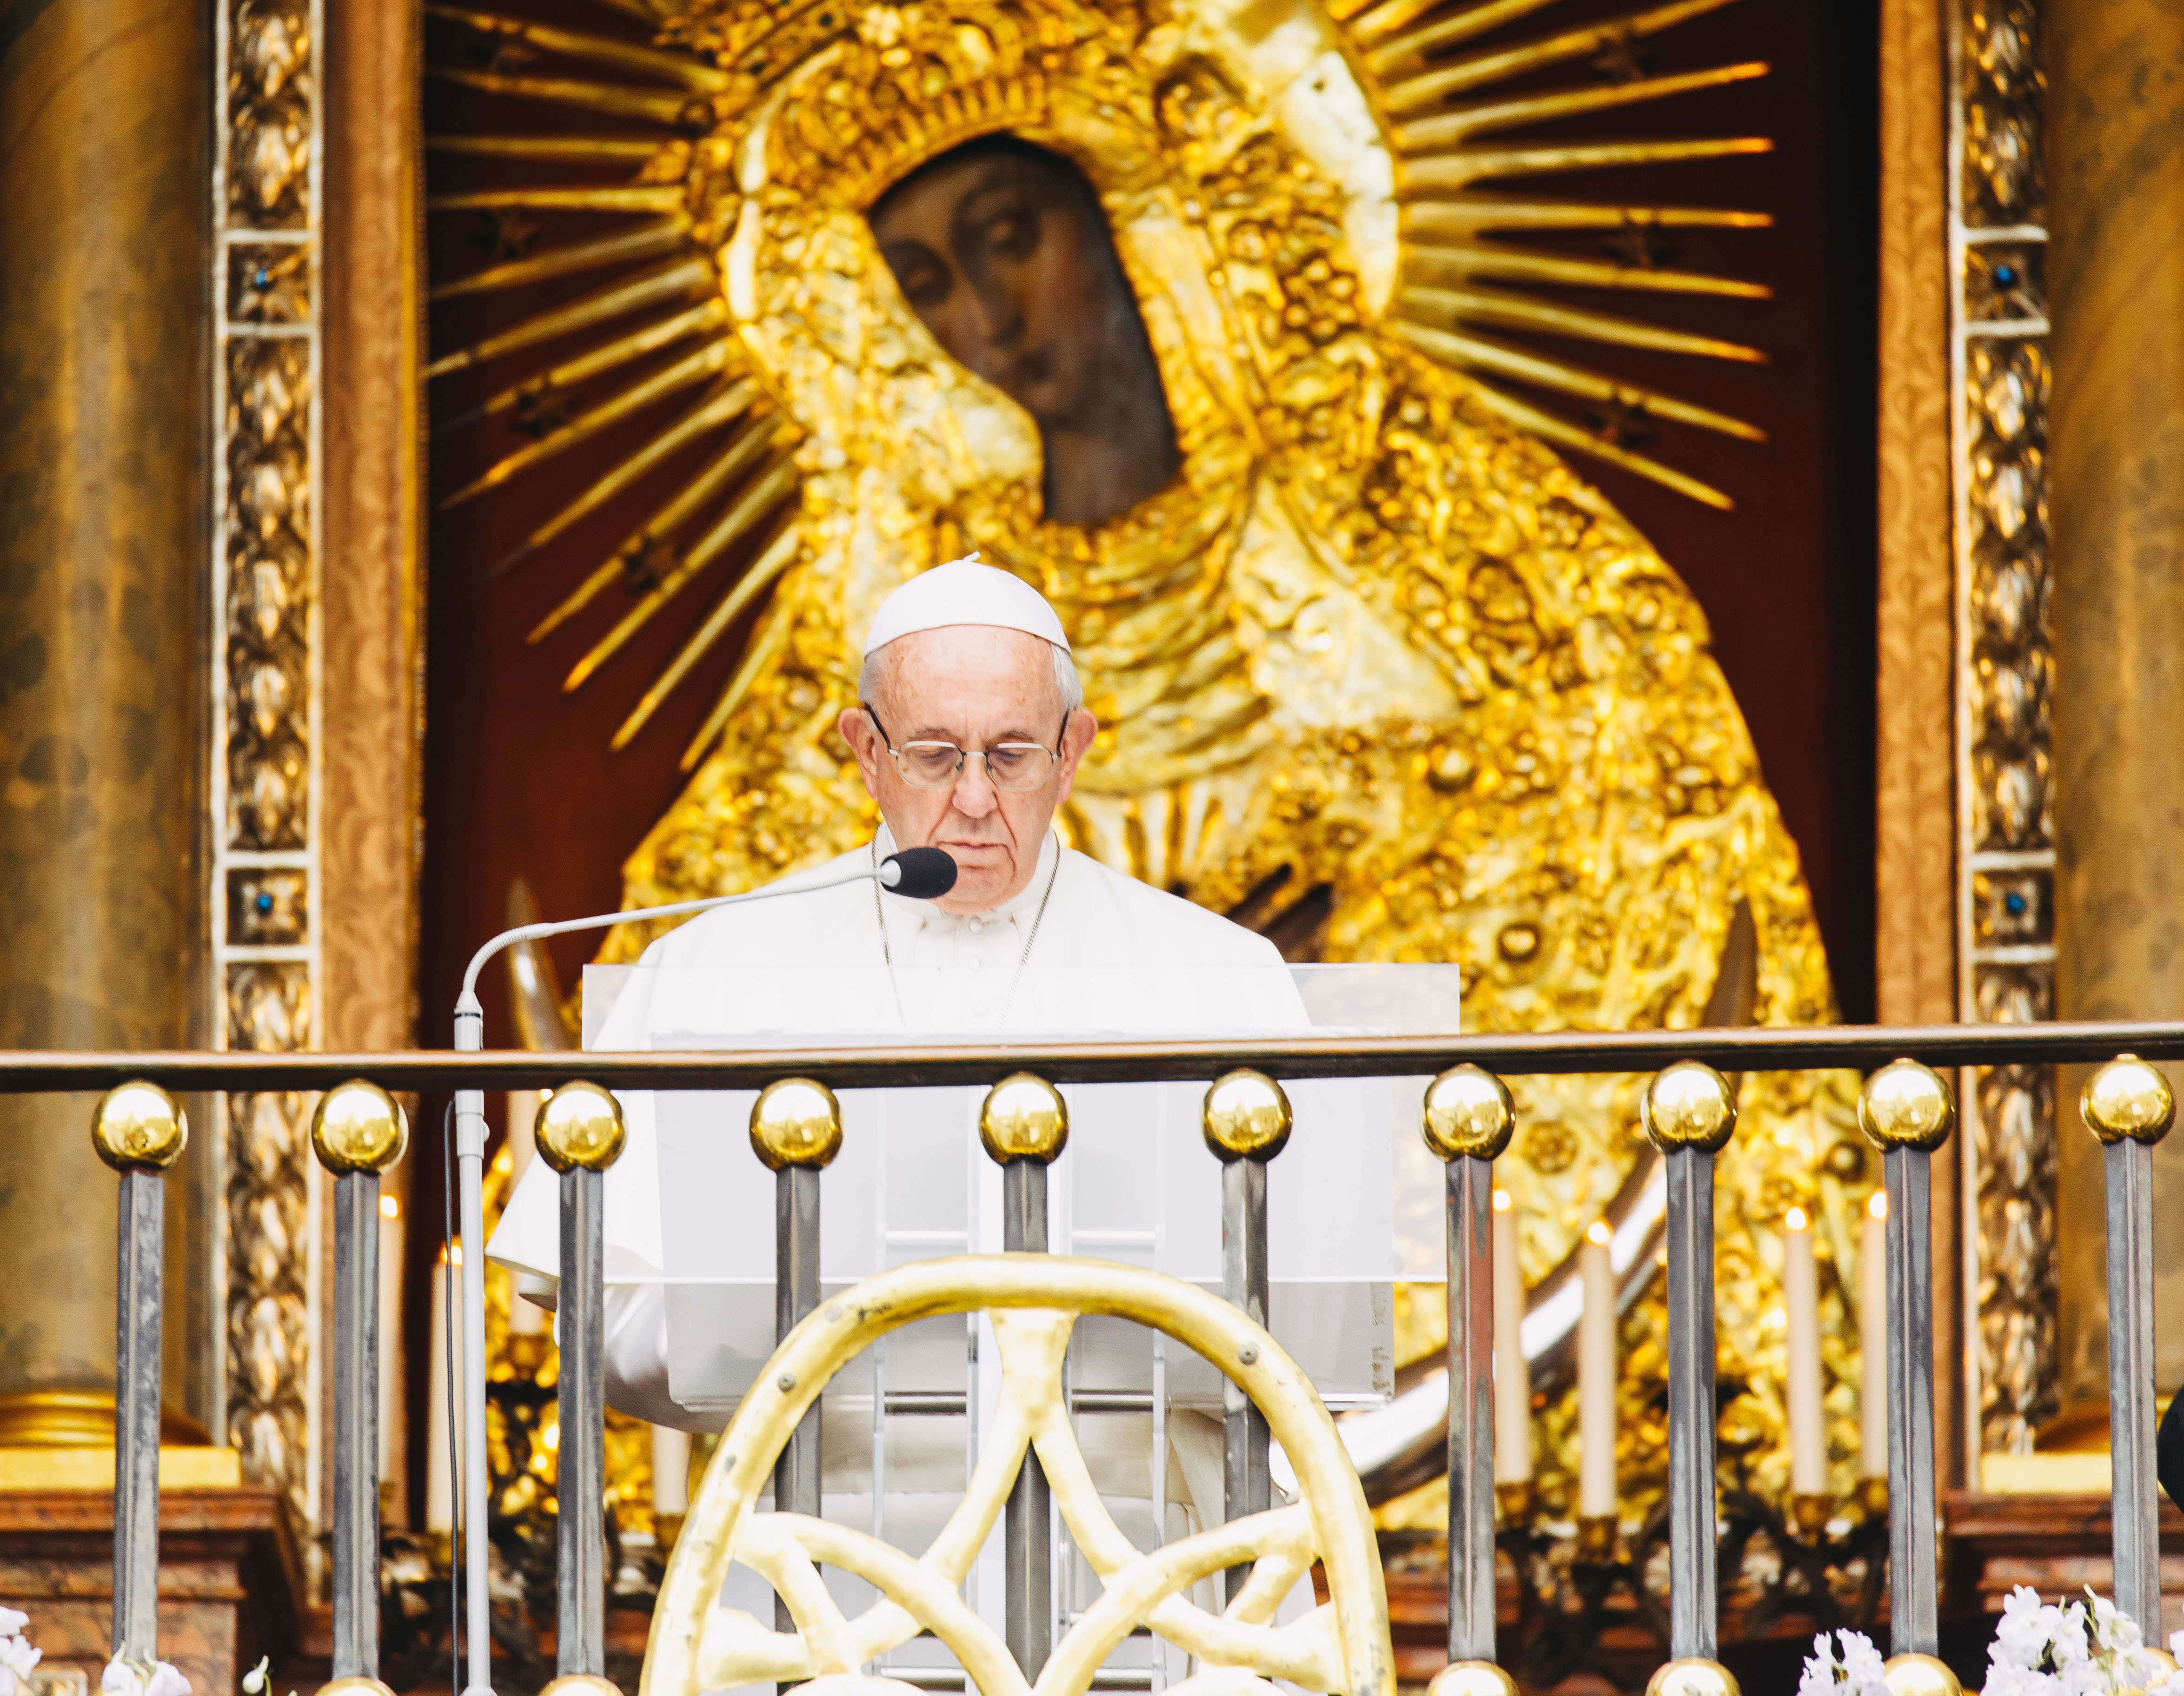 Žinioje Senelių dienai Popiežius kviečia parodyti švelnumą mūsų šeimų vyresniesiems